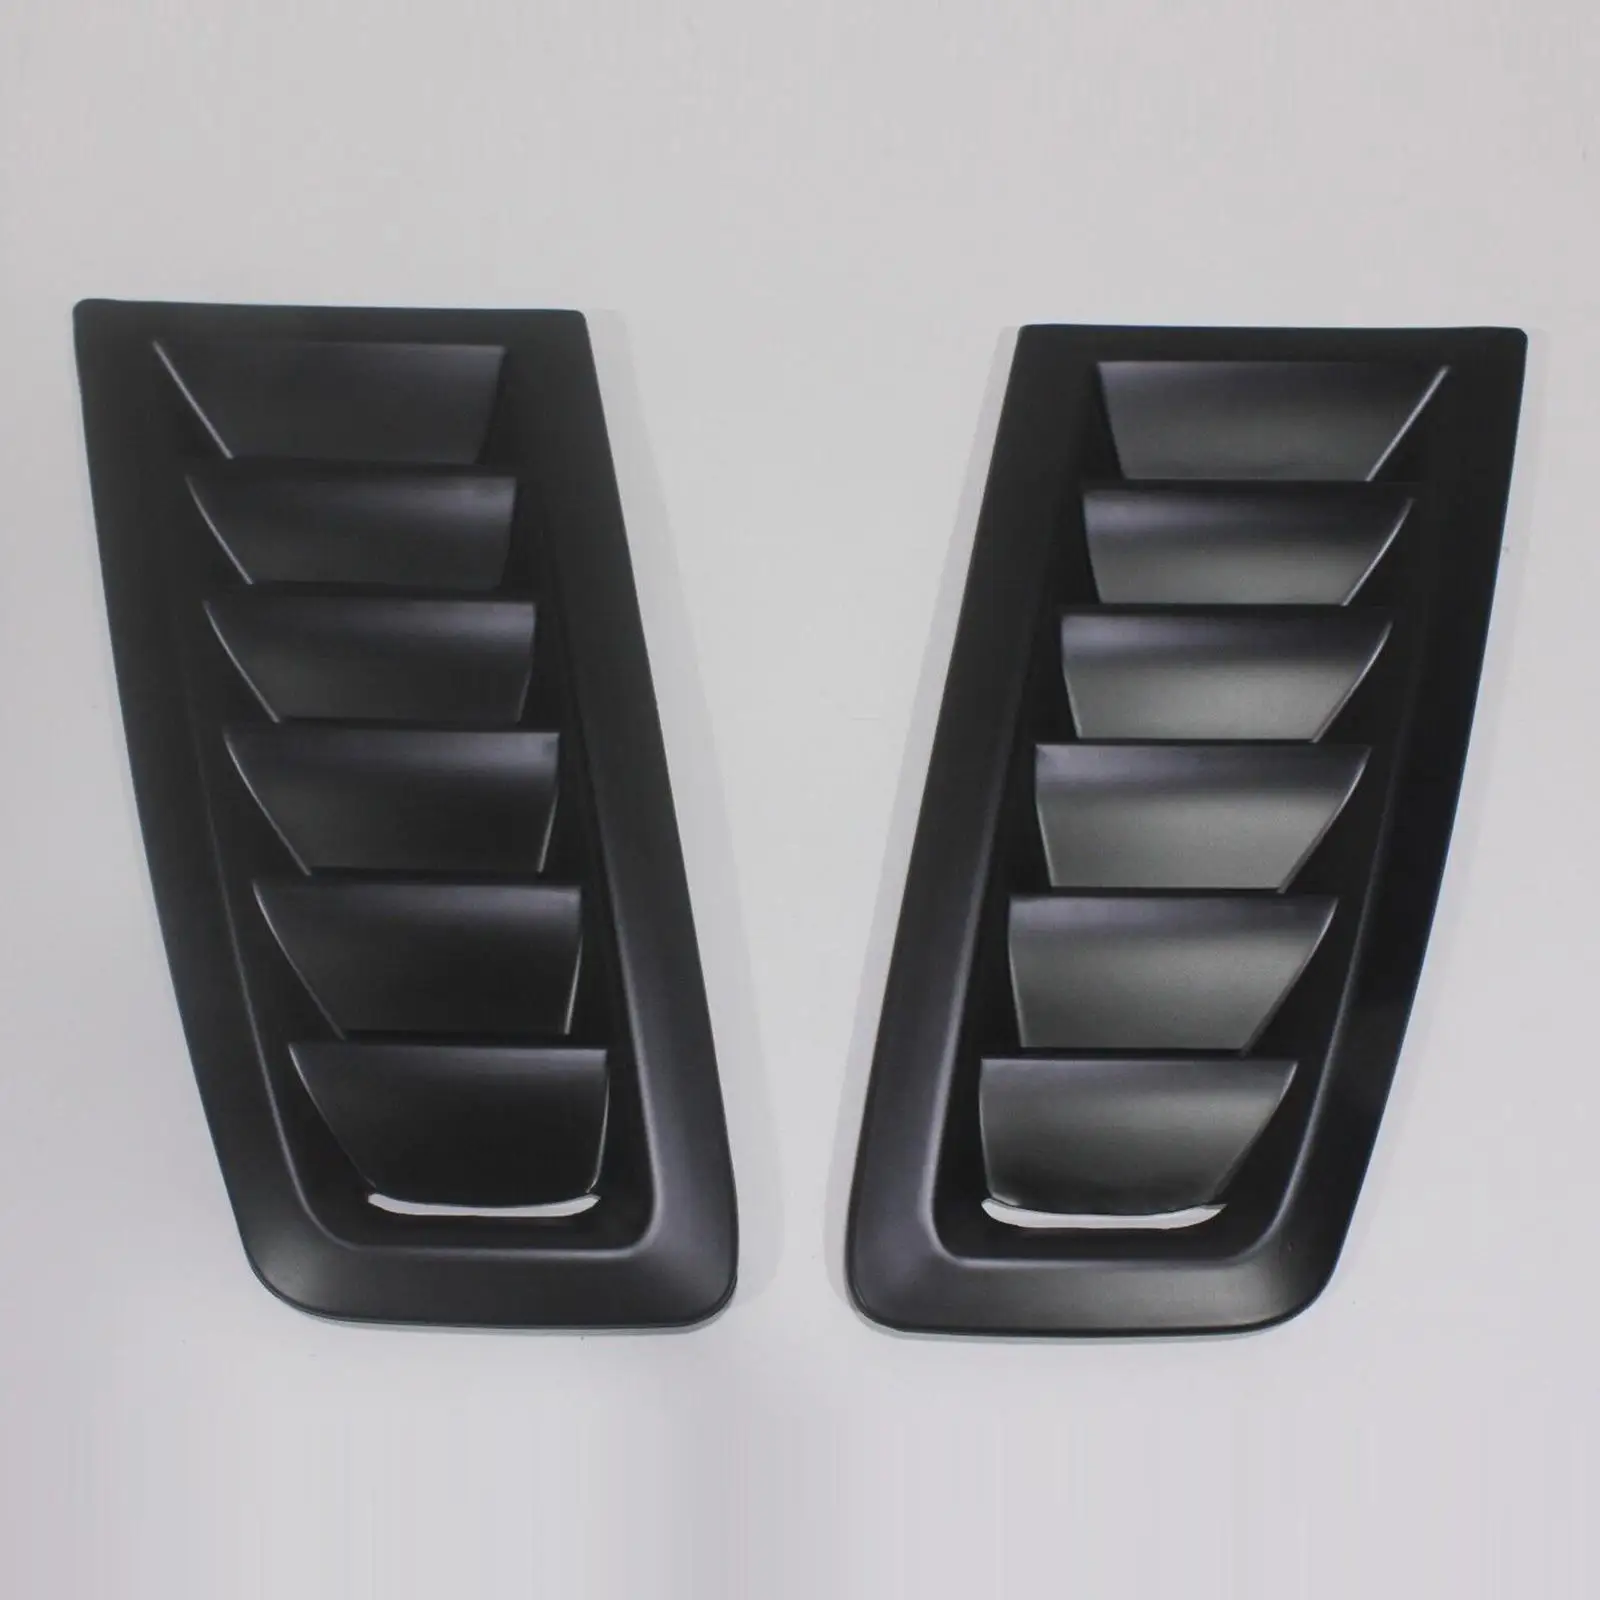 2 шт., Вентиляционное отверстие в капоте автомобиля, крышка капота, Комплект для вентиляционного отверстия в капоте автомобиля для Ford Focus RS, Модифицированный Аксессуар Изображение 1